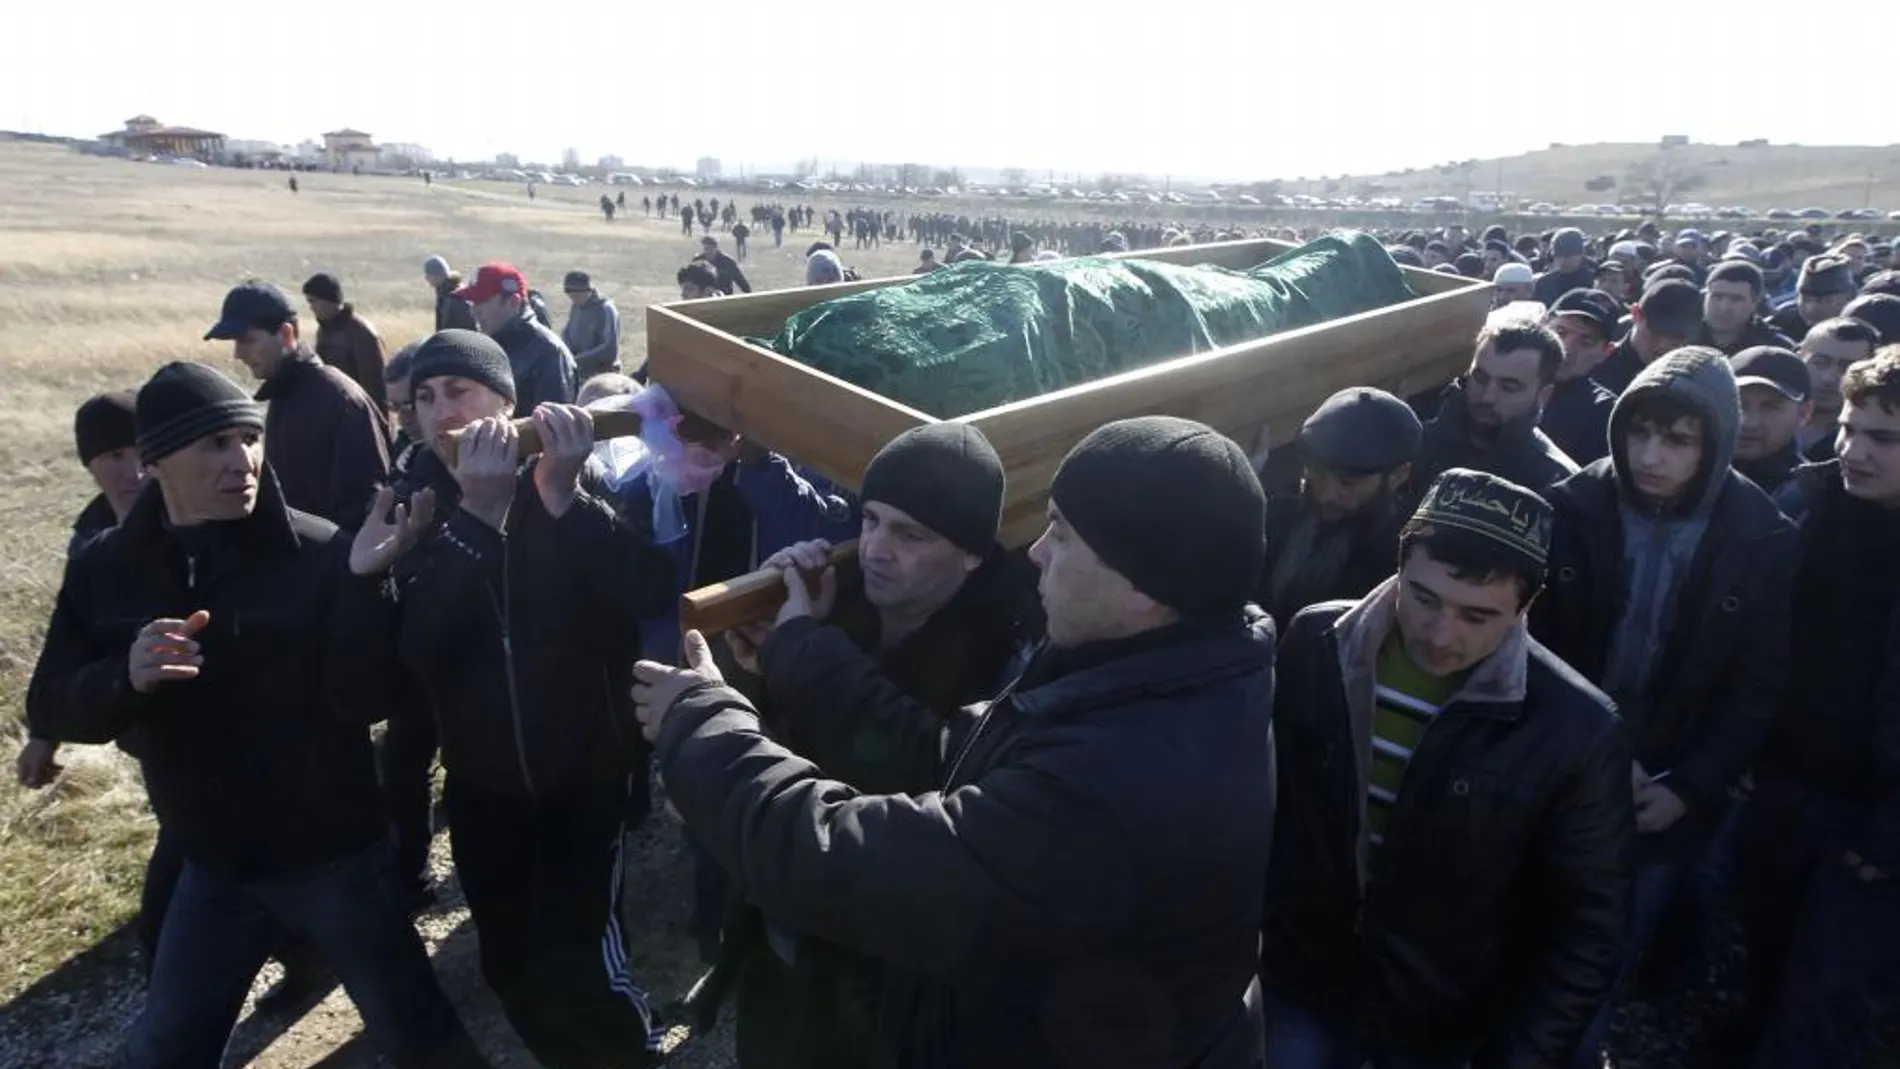 Tártaros de Crimea en el entierro de Reshat Ametov, en Simferopol